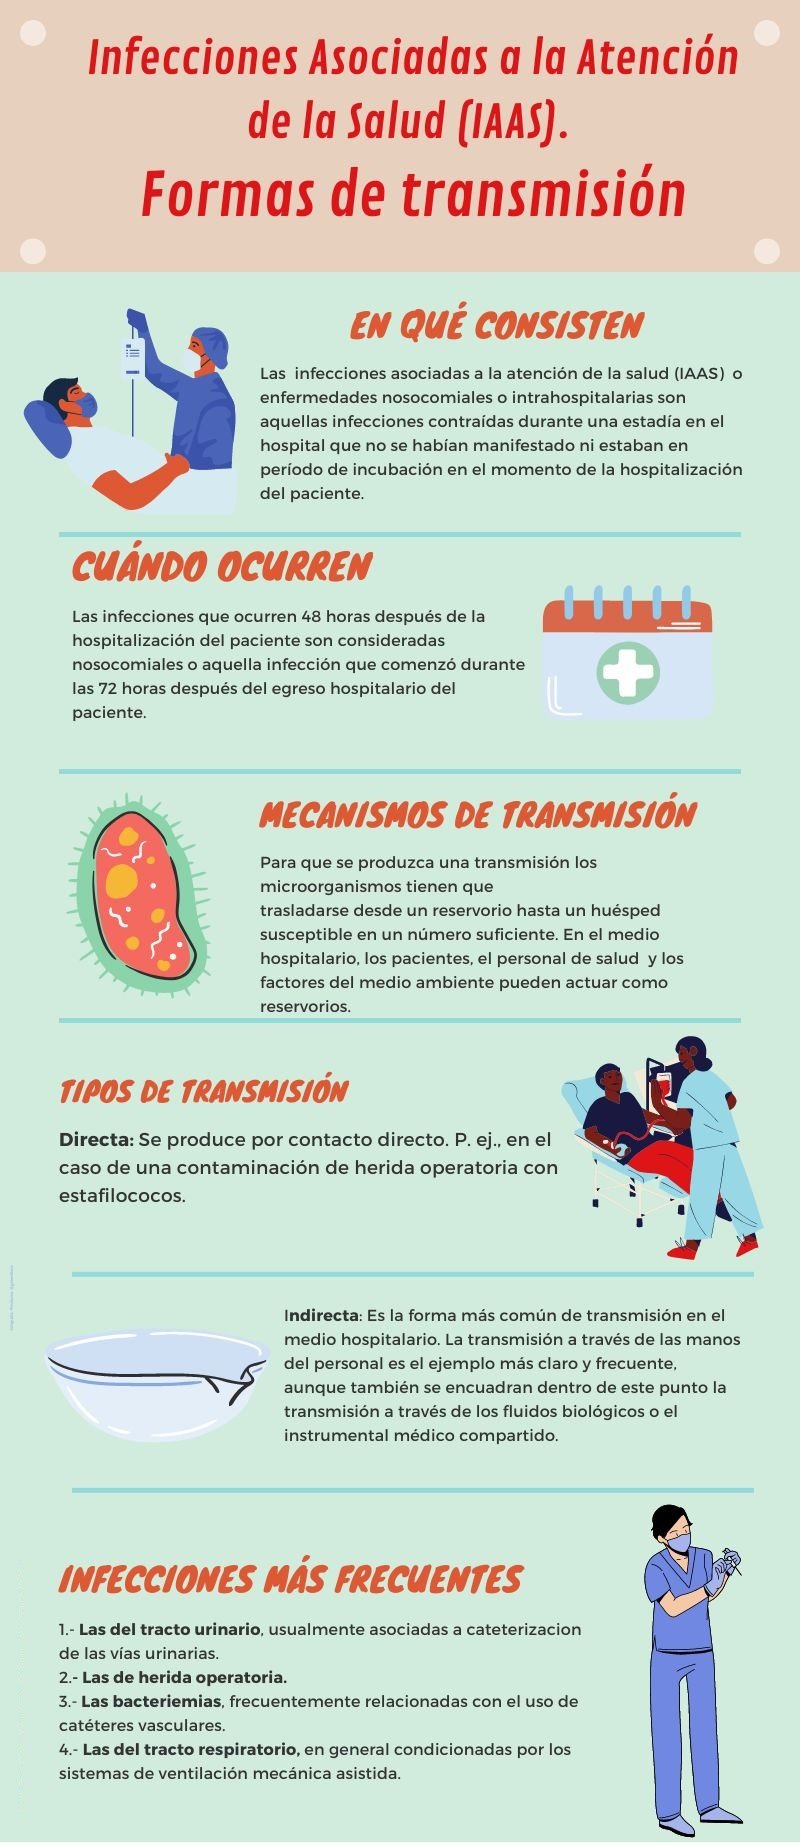 Infografía de formas de transmisión de las Infecciones Asociadas a la Atención de la Salud (IAAS)